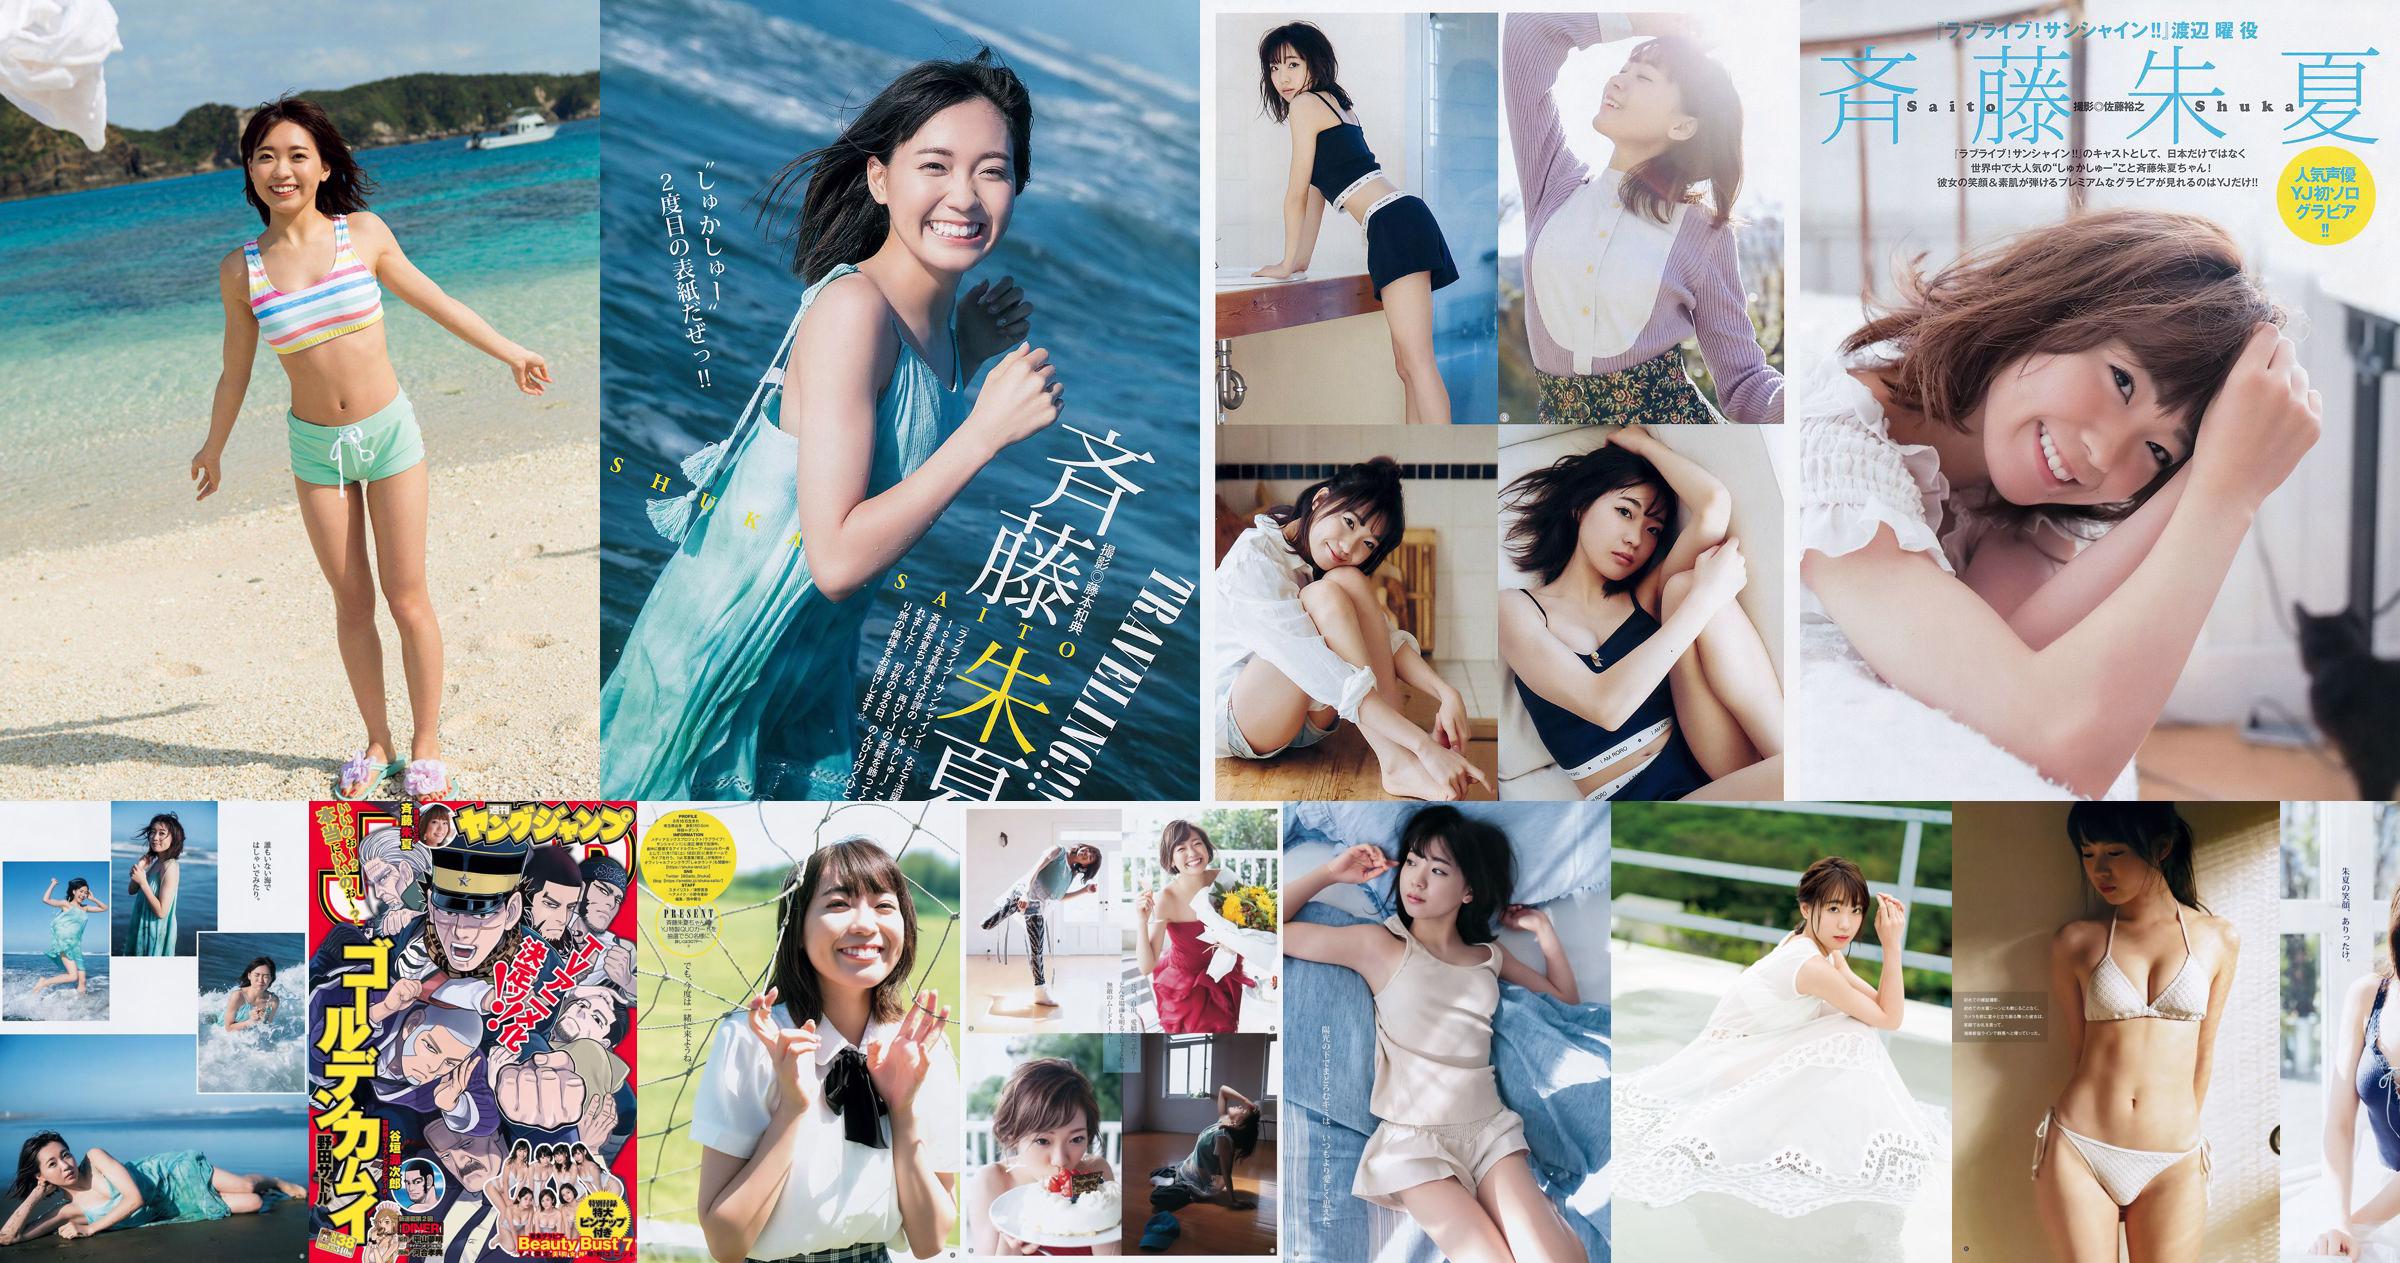 [THỨ SÁU] 《Shuka Saito, 22 tuổi, cô gái áo tắm đầu tiên độc quyền phát hành đoạn phim quý giá của một diễn viên lồng tiếng cho vụ nổ lớn nổi tiếng》 Ảnh No.0aedec Trang 1